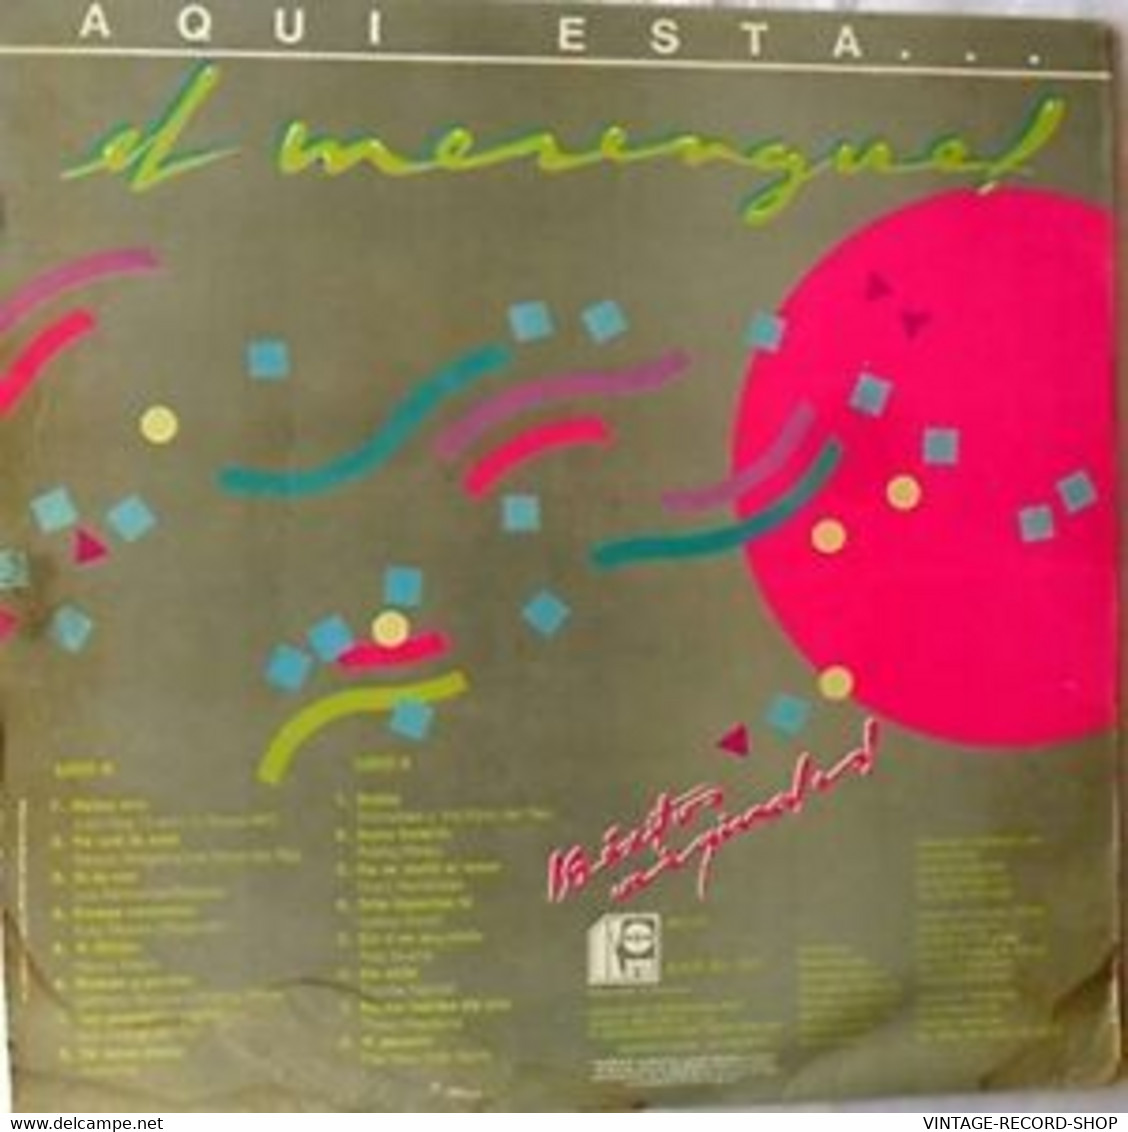 AQUI ESTA EL MERENGUE-LOS 16 EXITOS ORIGINALES-KAREN VENEZUELA 1995 VG++ - Autres - Musique Espagnole